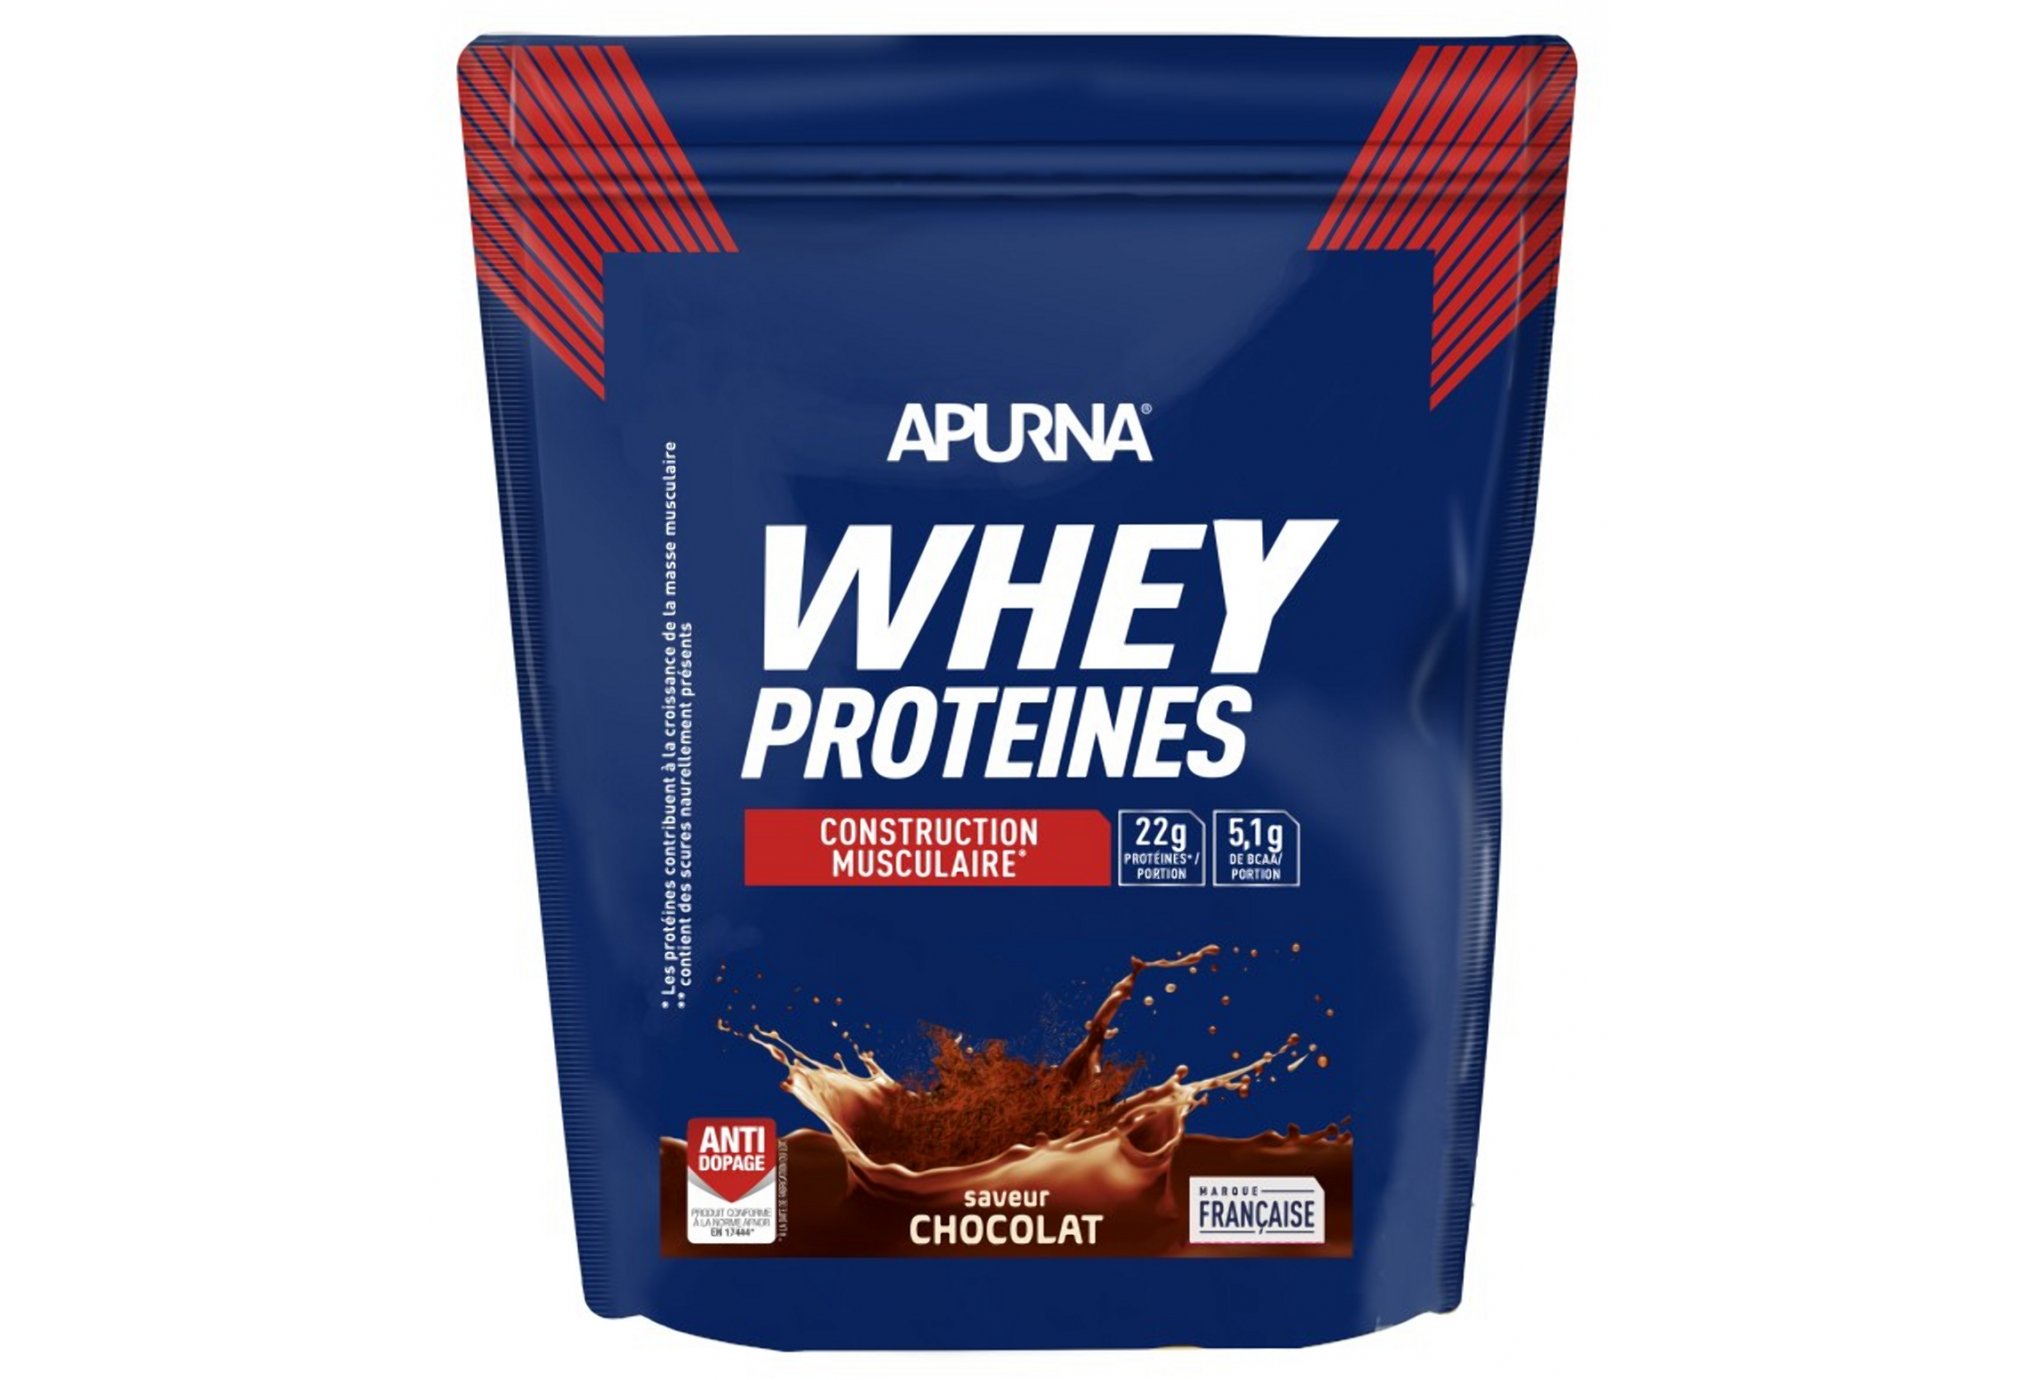 Apurna Whey protéines 720 g - Chocolat Diététique Protéines / récupération